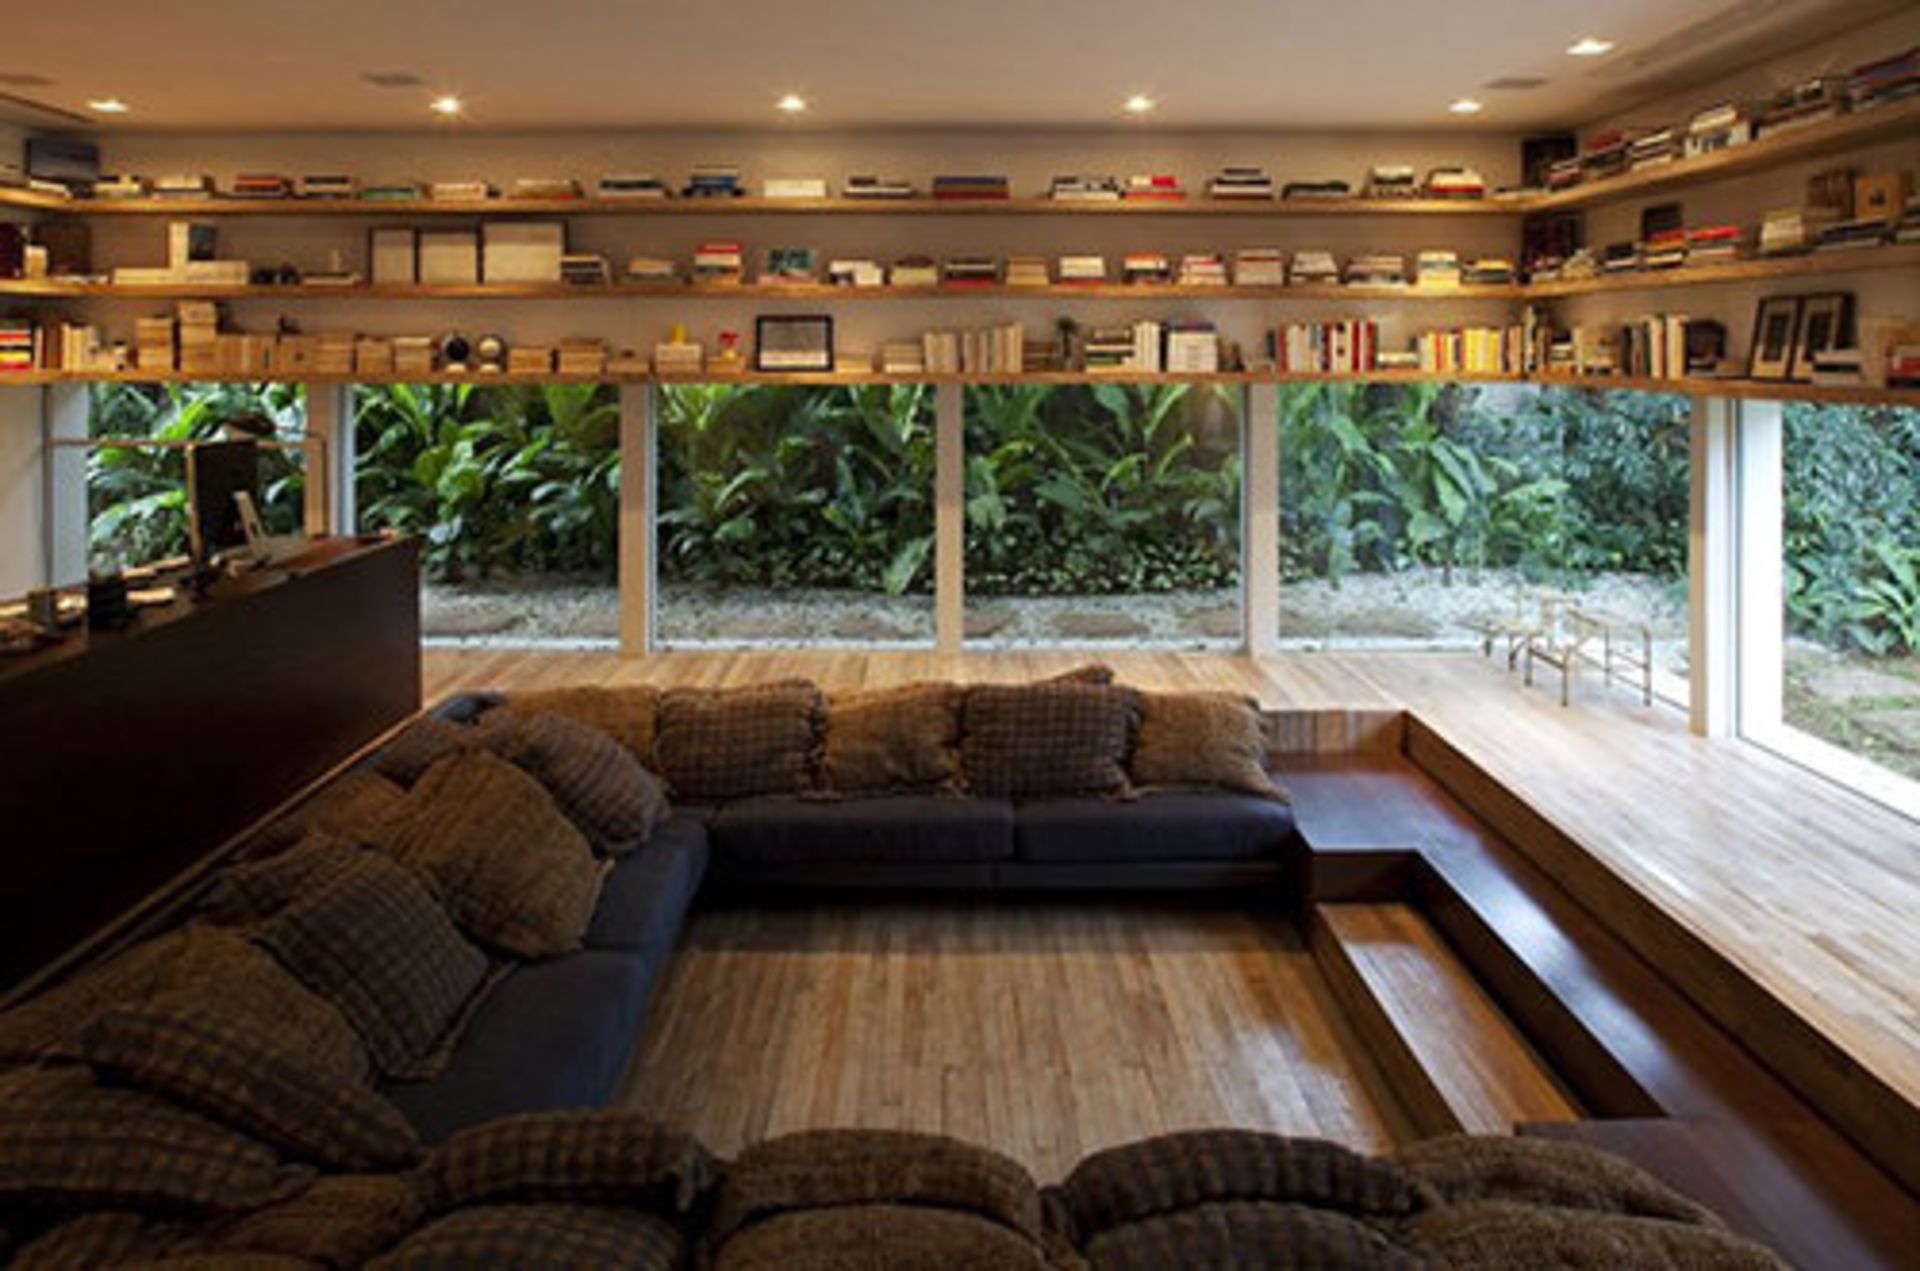 طراحی داخلی و کمک به تغییرات چشمگیر فضای منازل